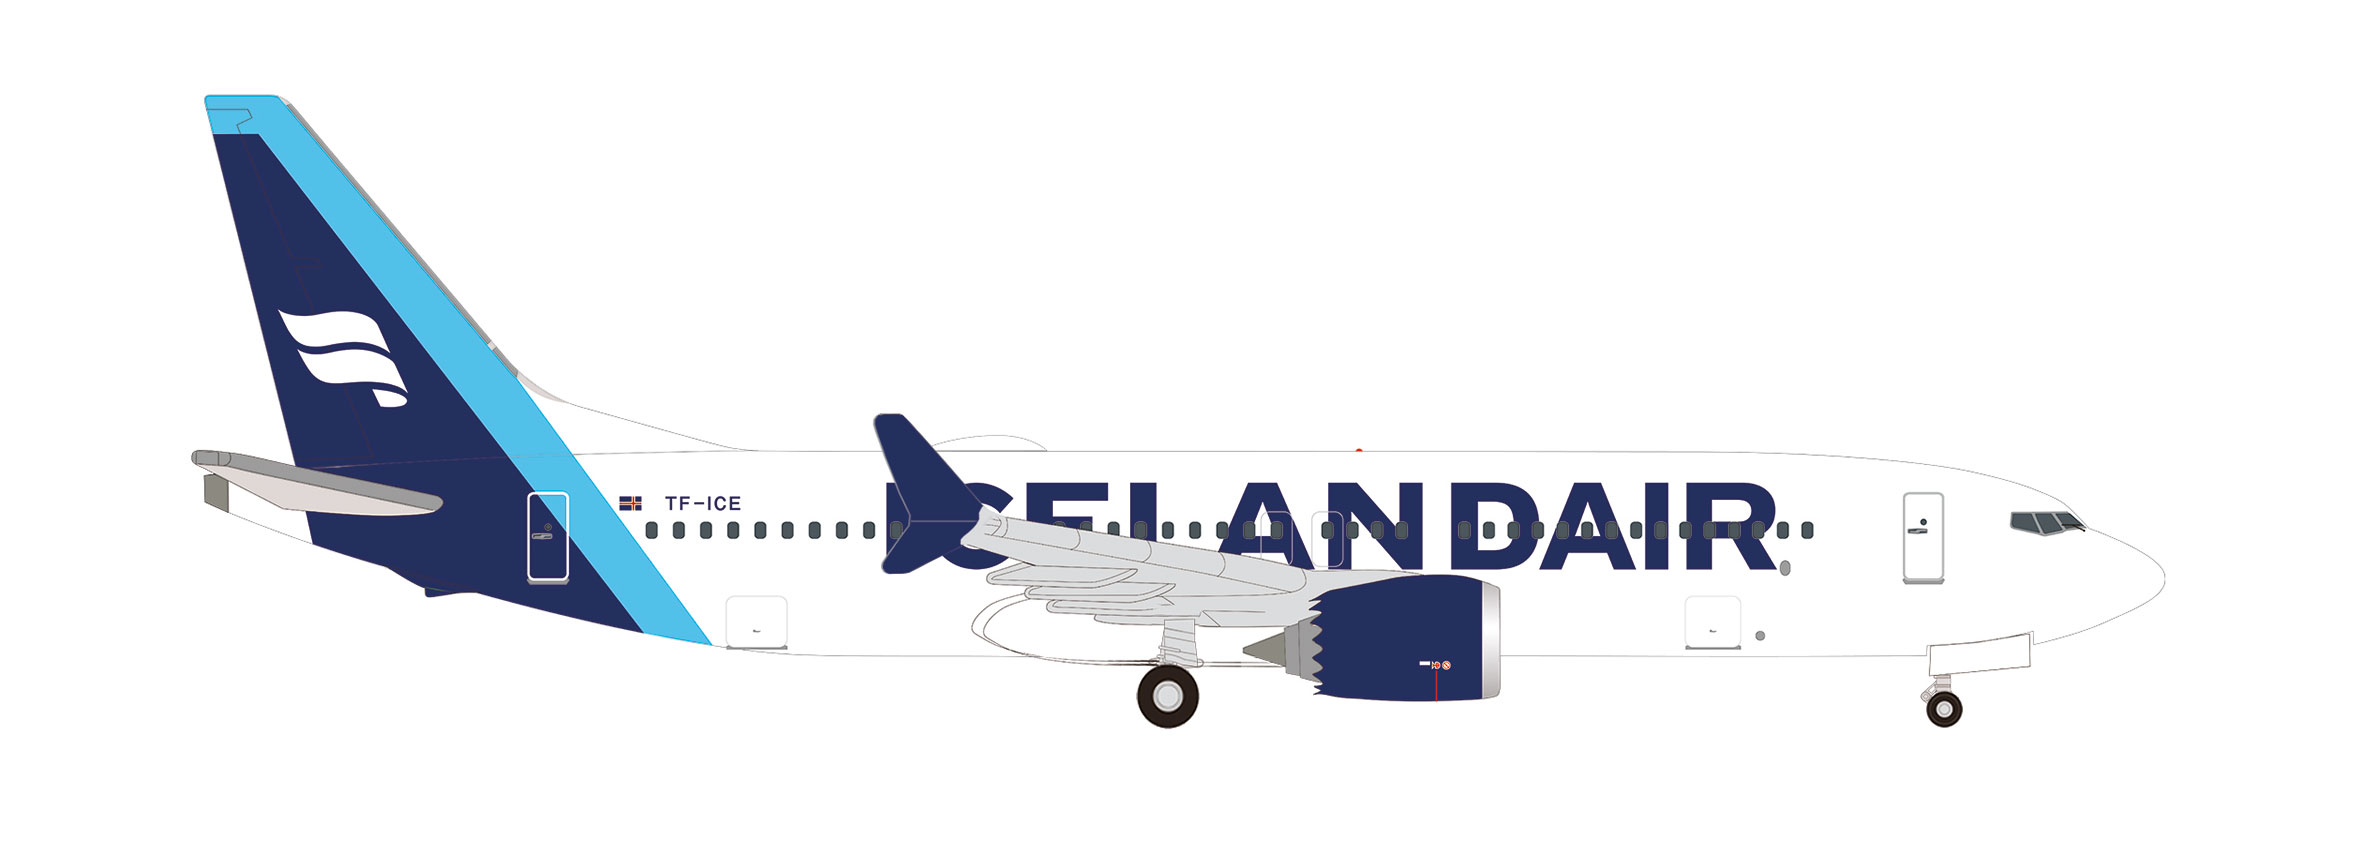 Icelandair Boeing 737 Max 8 - 